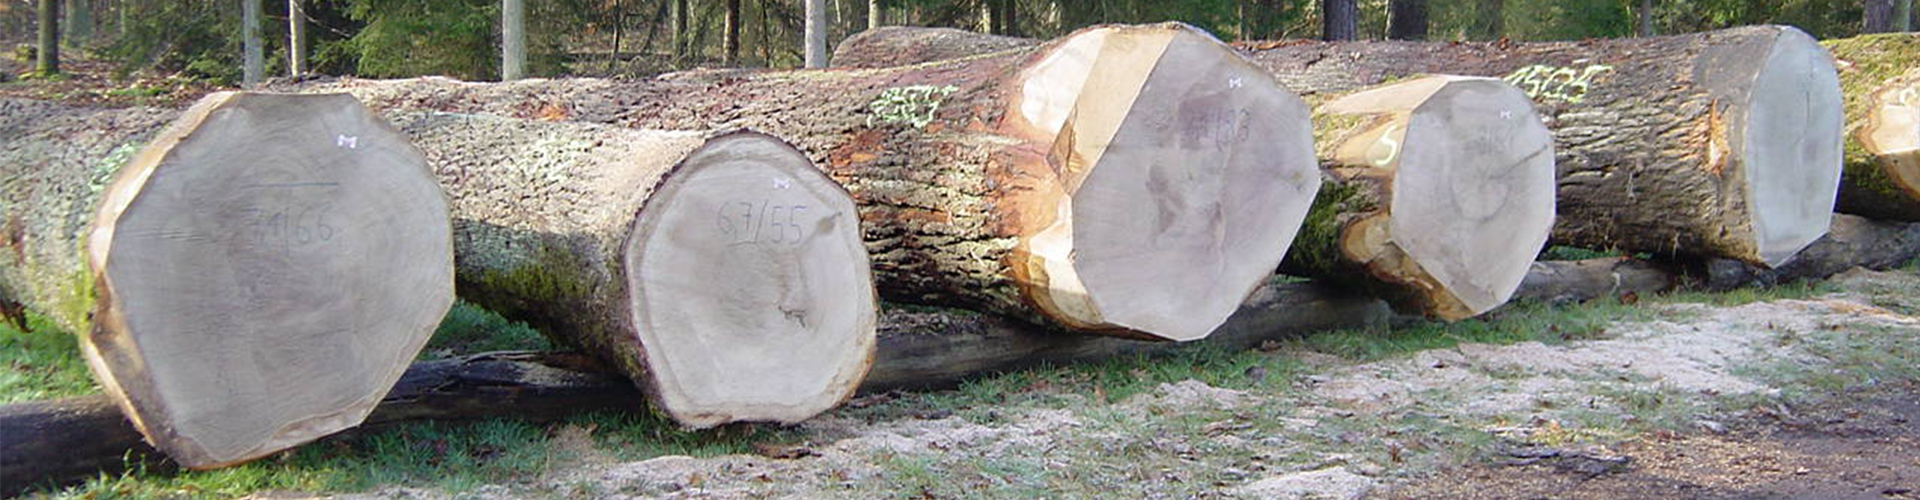 Nella foto si possono vedere diversi tronchi d'albero